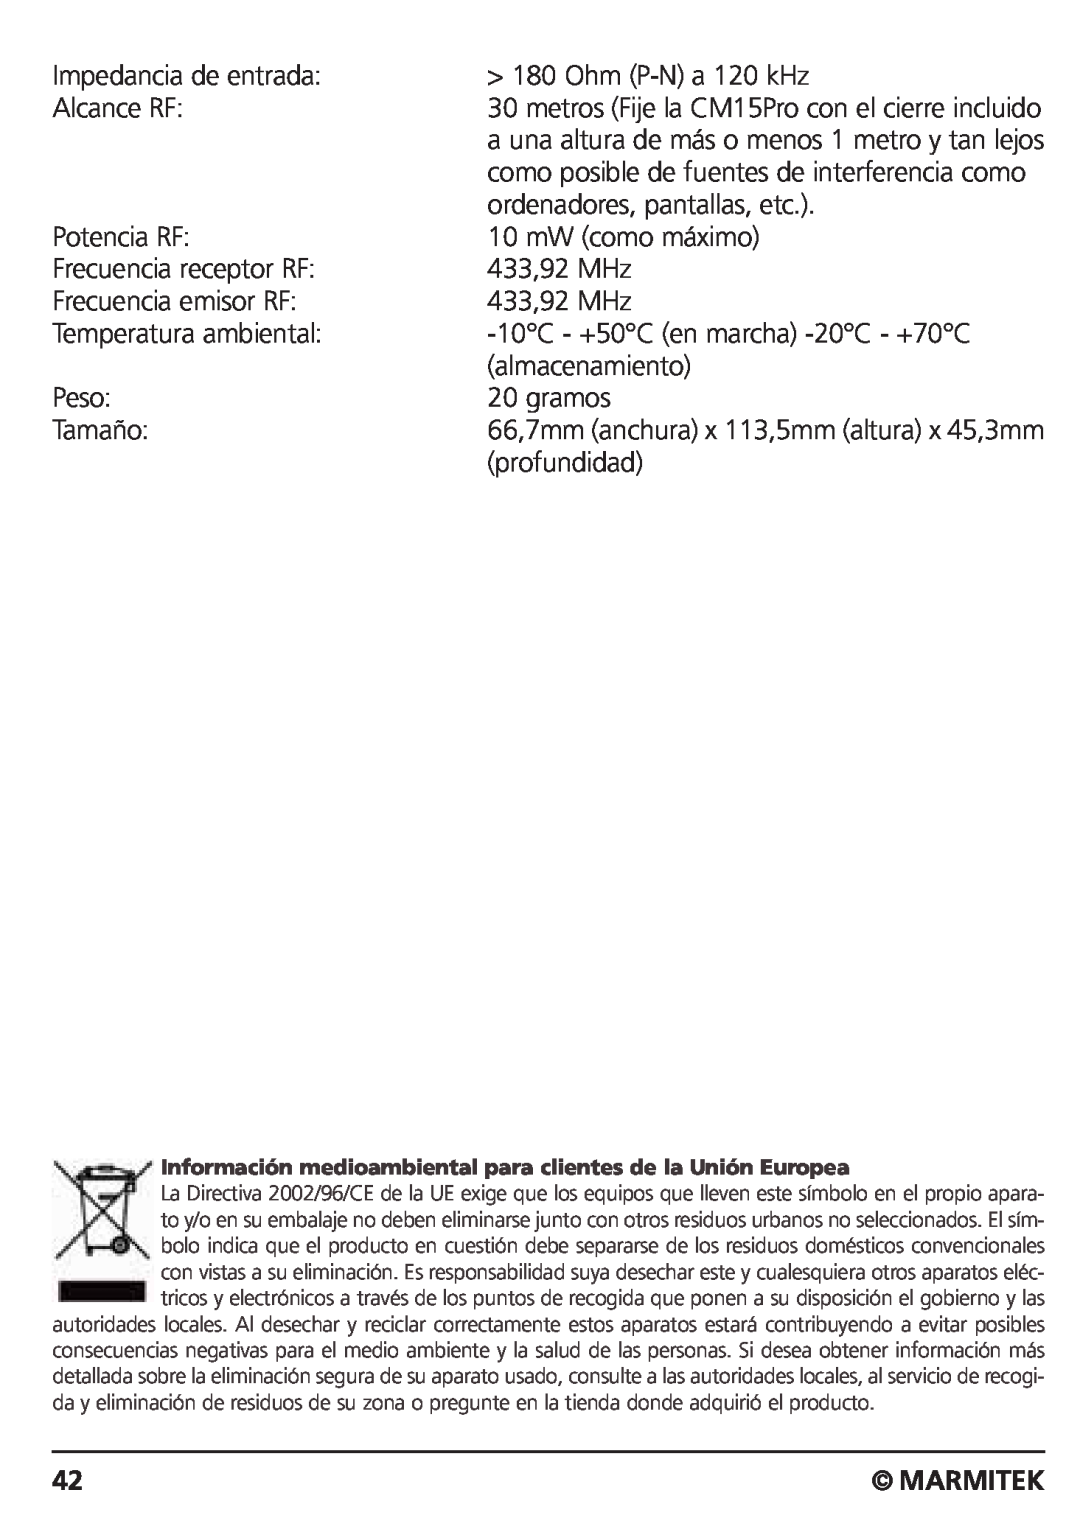 Marmitek CM15PRO manual Impedancia de entrada, Marmitek 